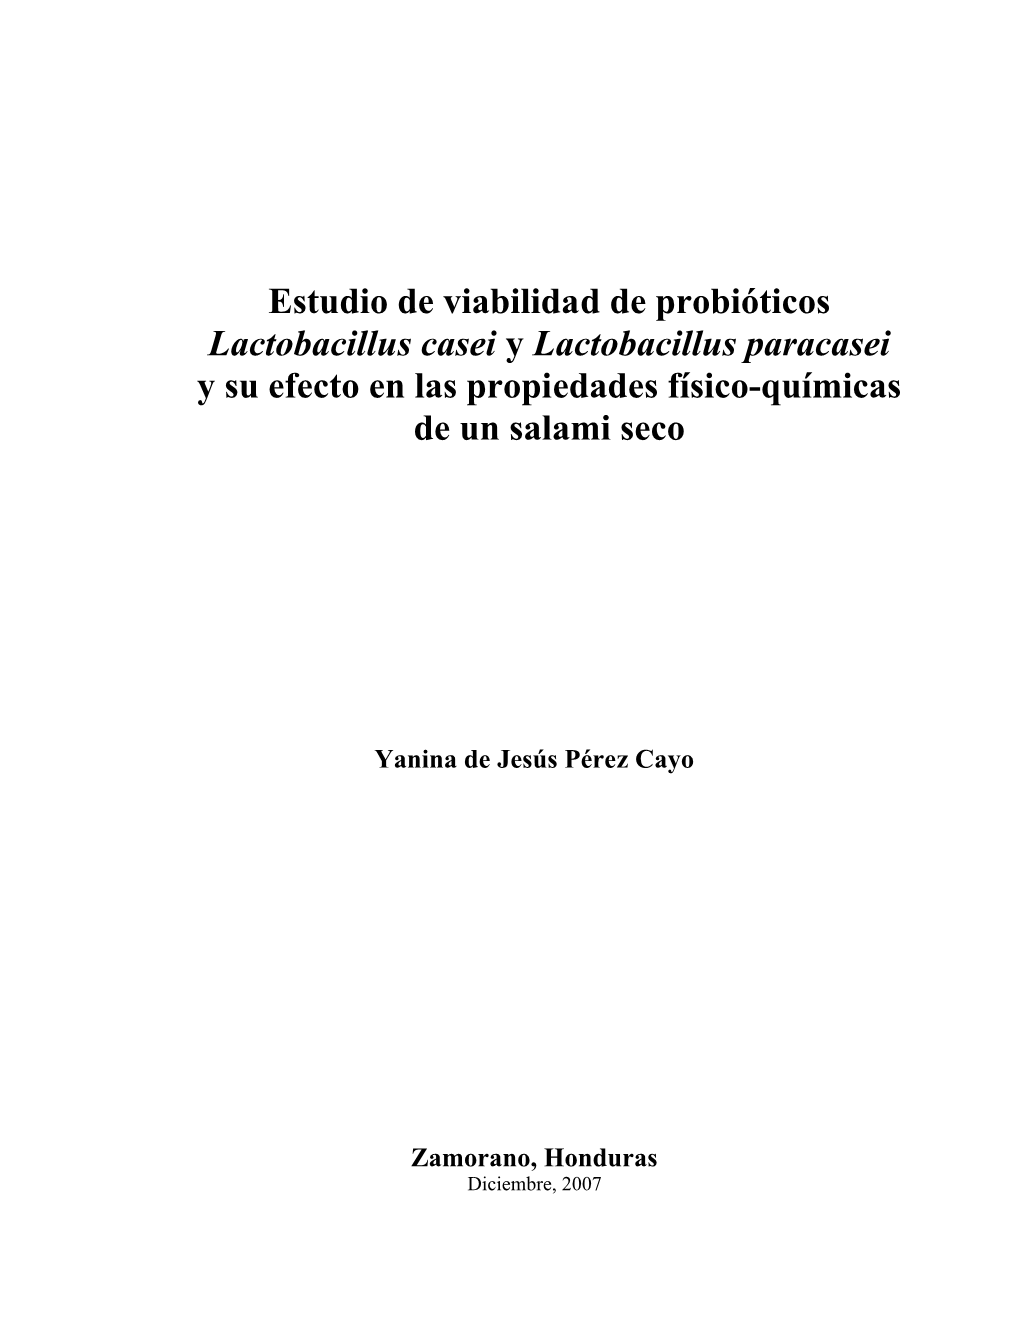 Estudio De Viabilidad De Probióticos Lactobacillus Casei Y Lactobacillus Paracasei Y Su Efecto En Las Propiedades Físico-Químicas De Un Salami Seco